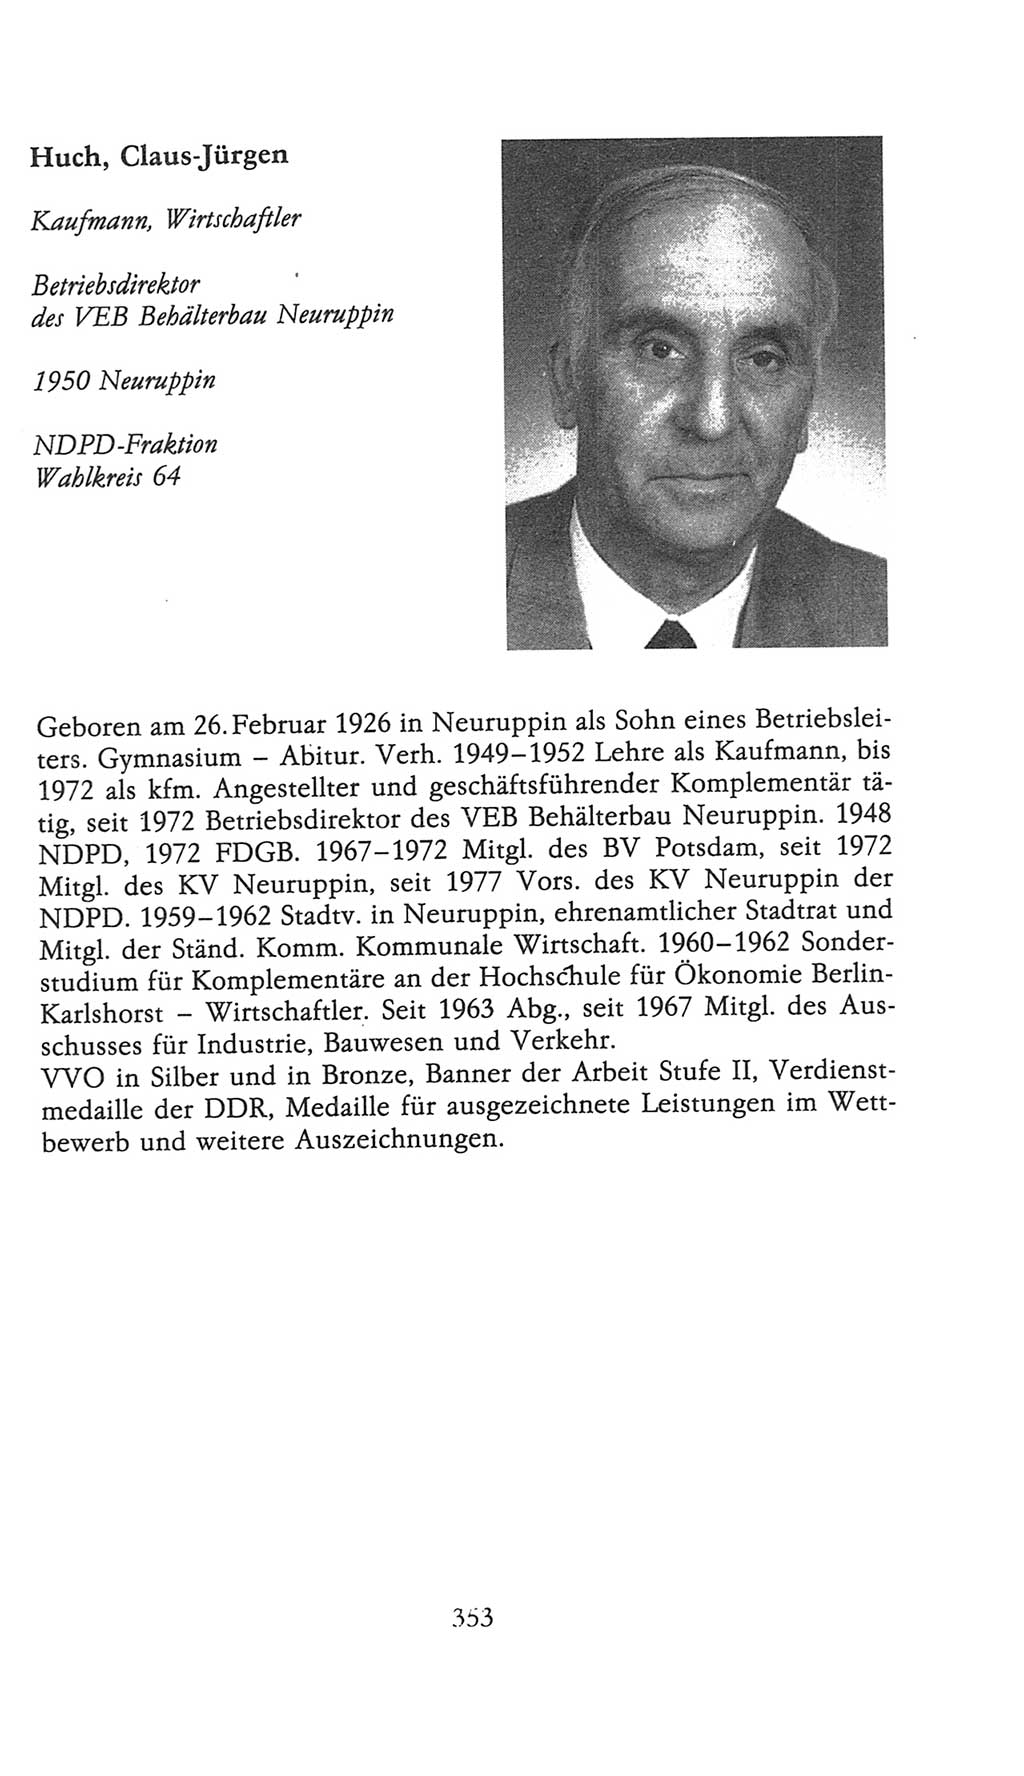 Volkskammer (VK) der Deutschen Demokratischen Republik (DDR), 9. Wahlperiode 1986-1990, Seite 353 (VK. DDR 9. WP. 1986-1990, S. 353)